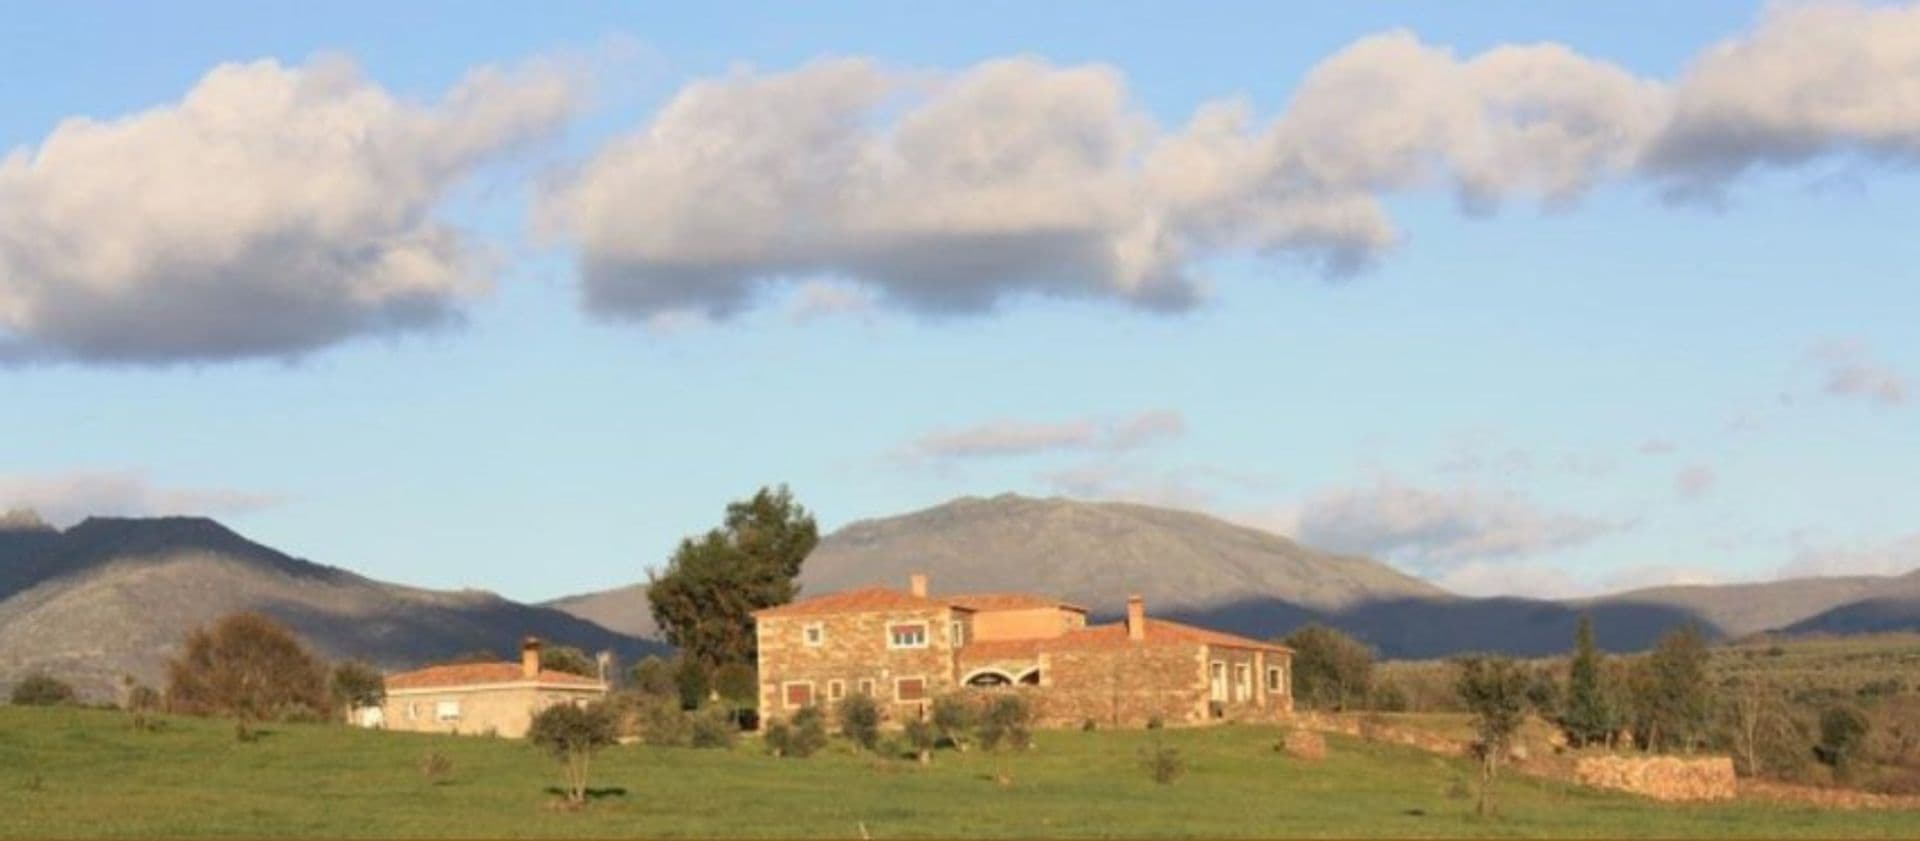 Exklusive Finca in ruhiger und natürlicher Umgebung in Cáceres, Extremadura.